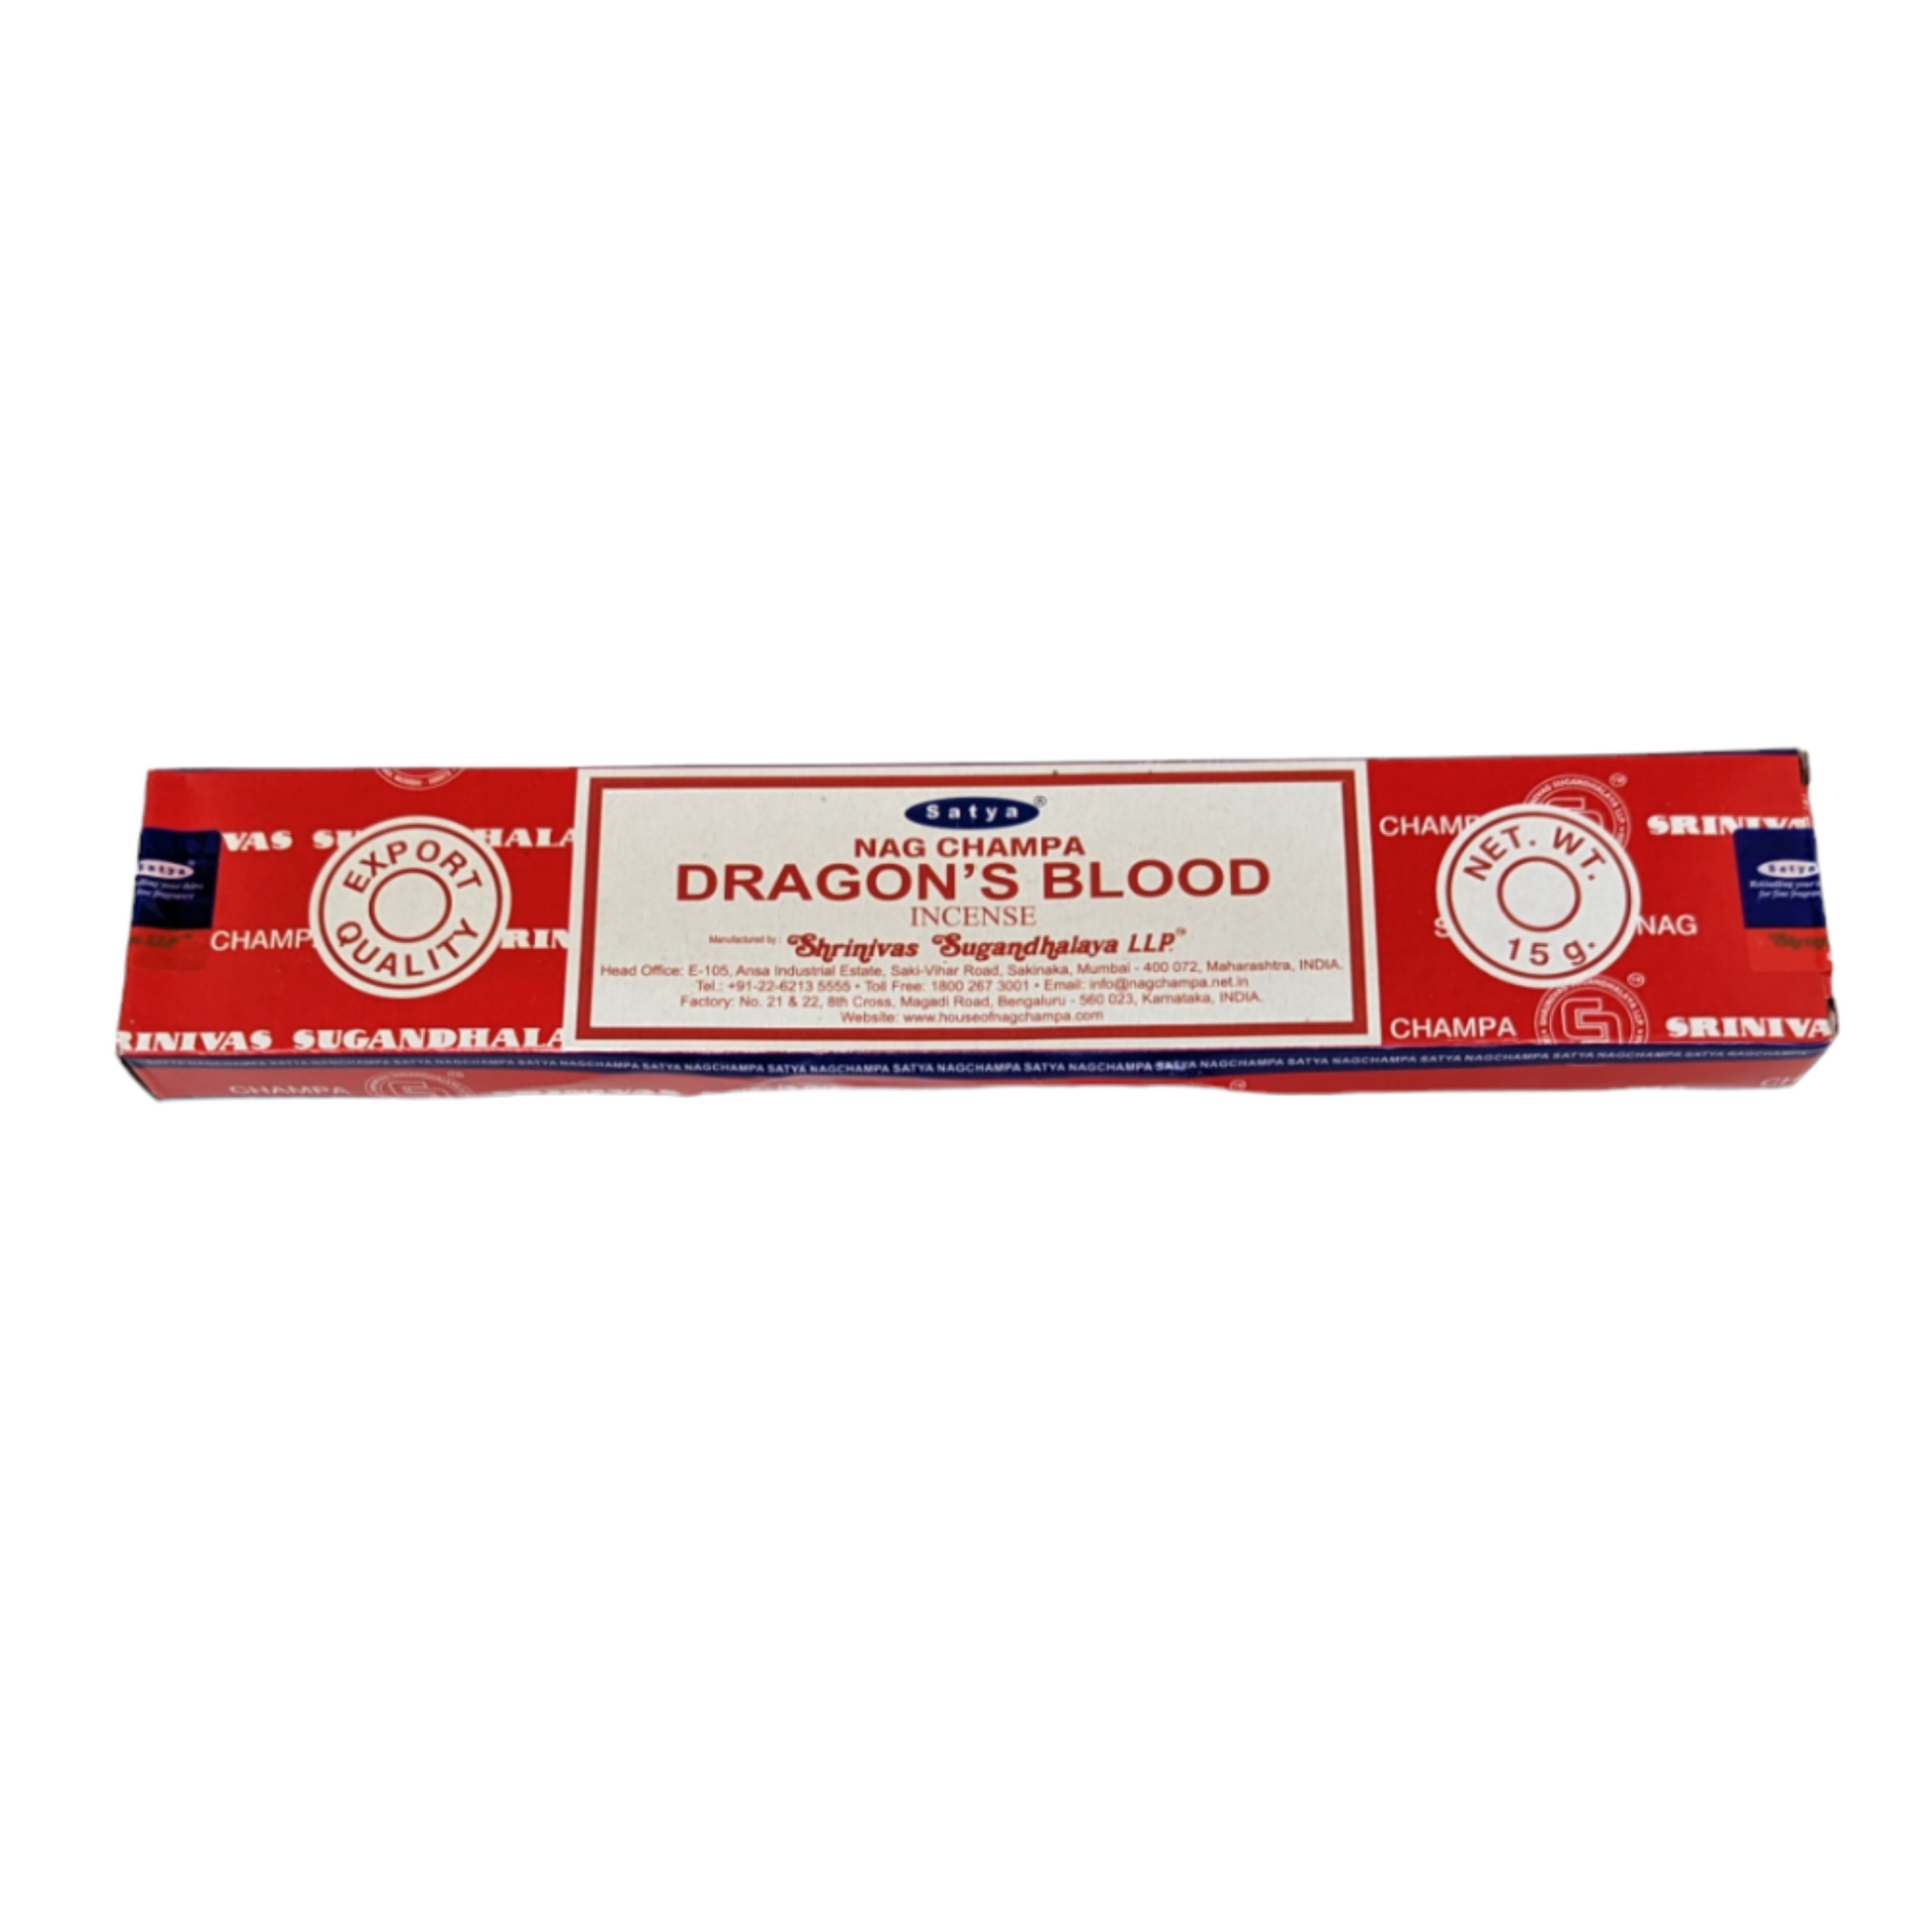 Dragon's Blood 15g box